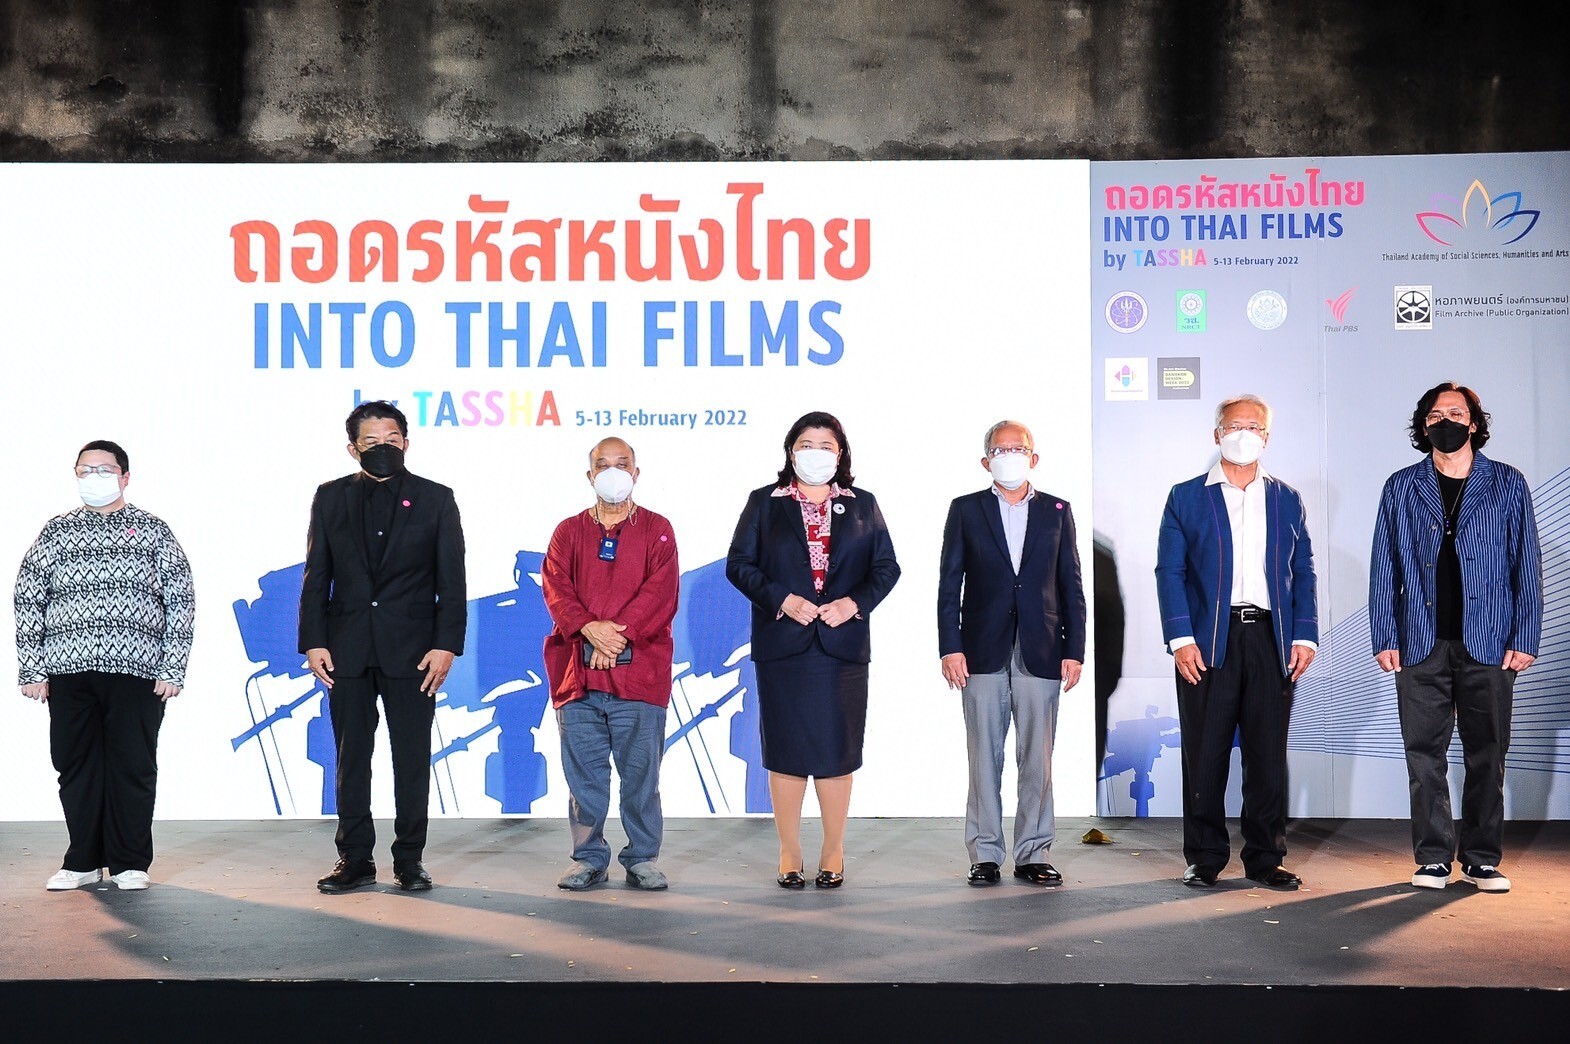 นิทรรศการภาพยนตร์ "Into Thai Films by TASSHA ถอดรหัสหนังไทย" ถูกจัดทำขึ้นโดย "ธัชชา"ภายใต้โครงการวิจัย อว. พารู้ พารัก รากเหง้าแผ่นดินไทย